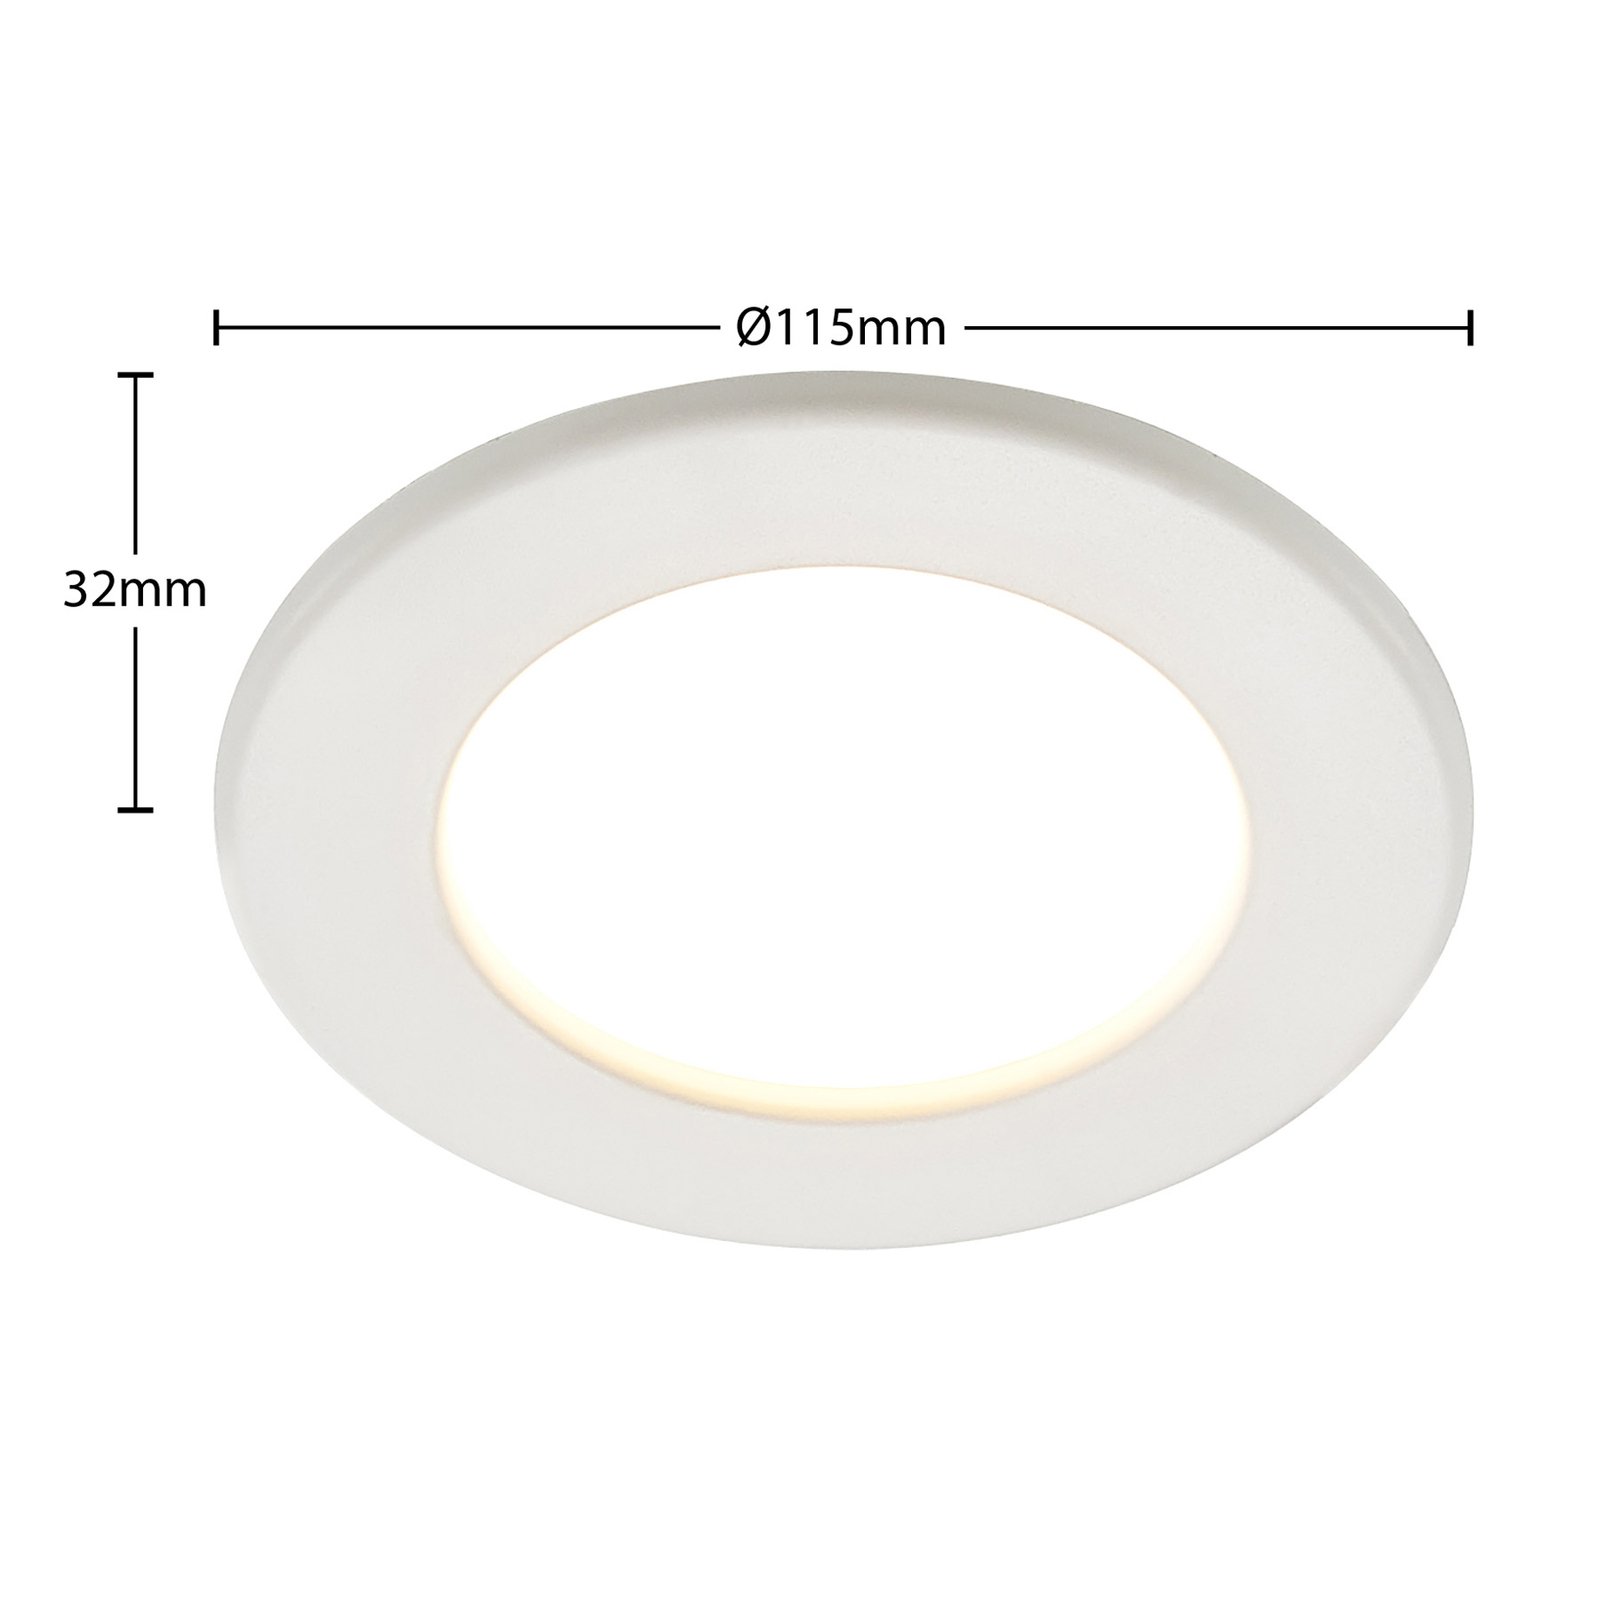 Prios Cadance spot LED da incasso, bianco, 11,5 cm